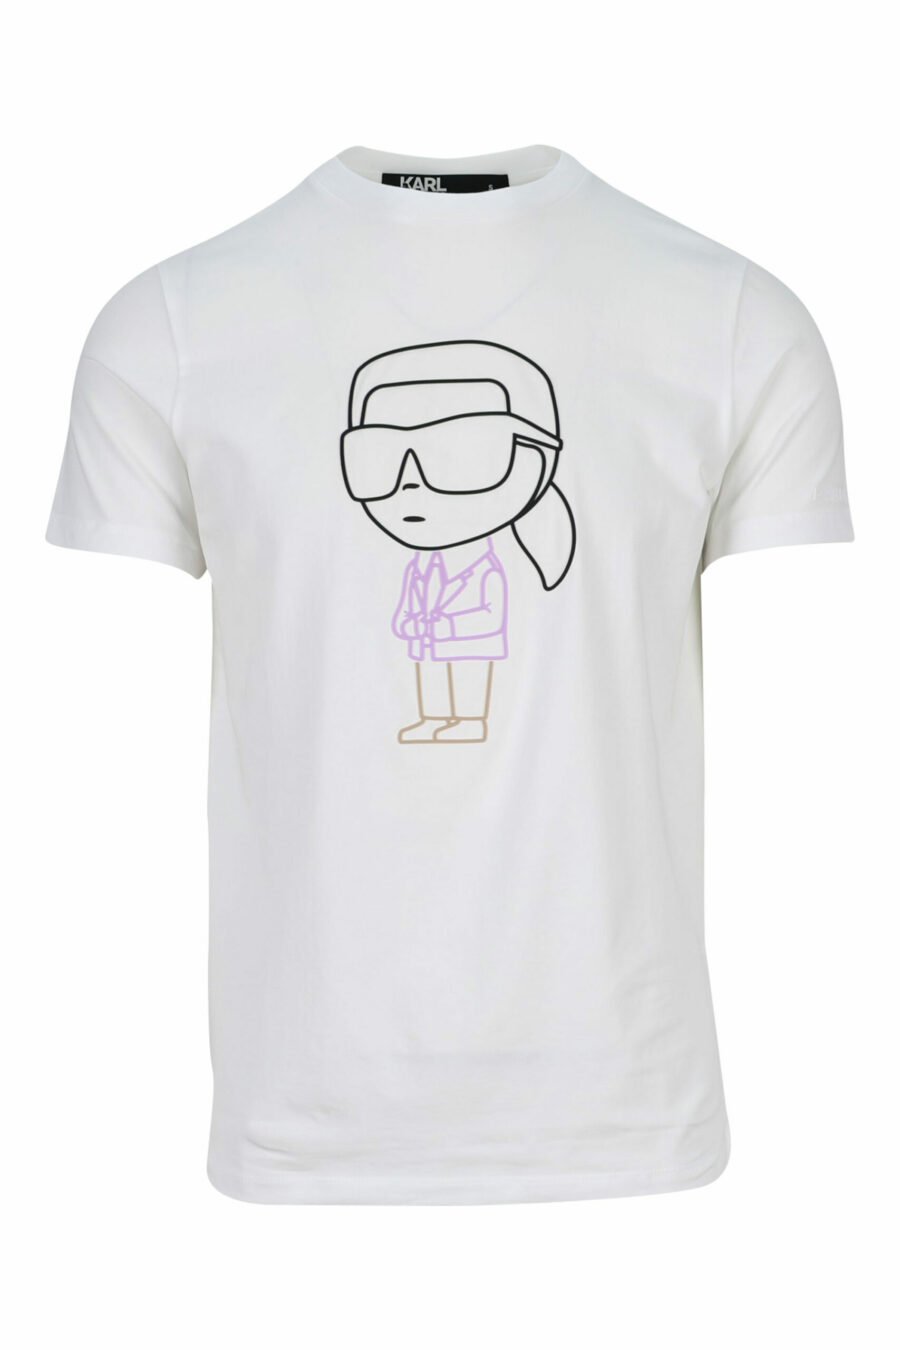 Weißes T-Shirt mit mehrfarbigem "karl silhouette" Maxilogo - 4062226400701 1 skaliert